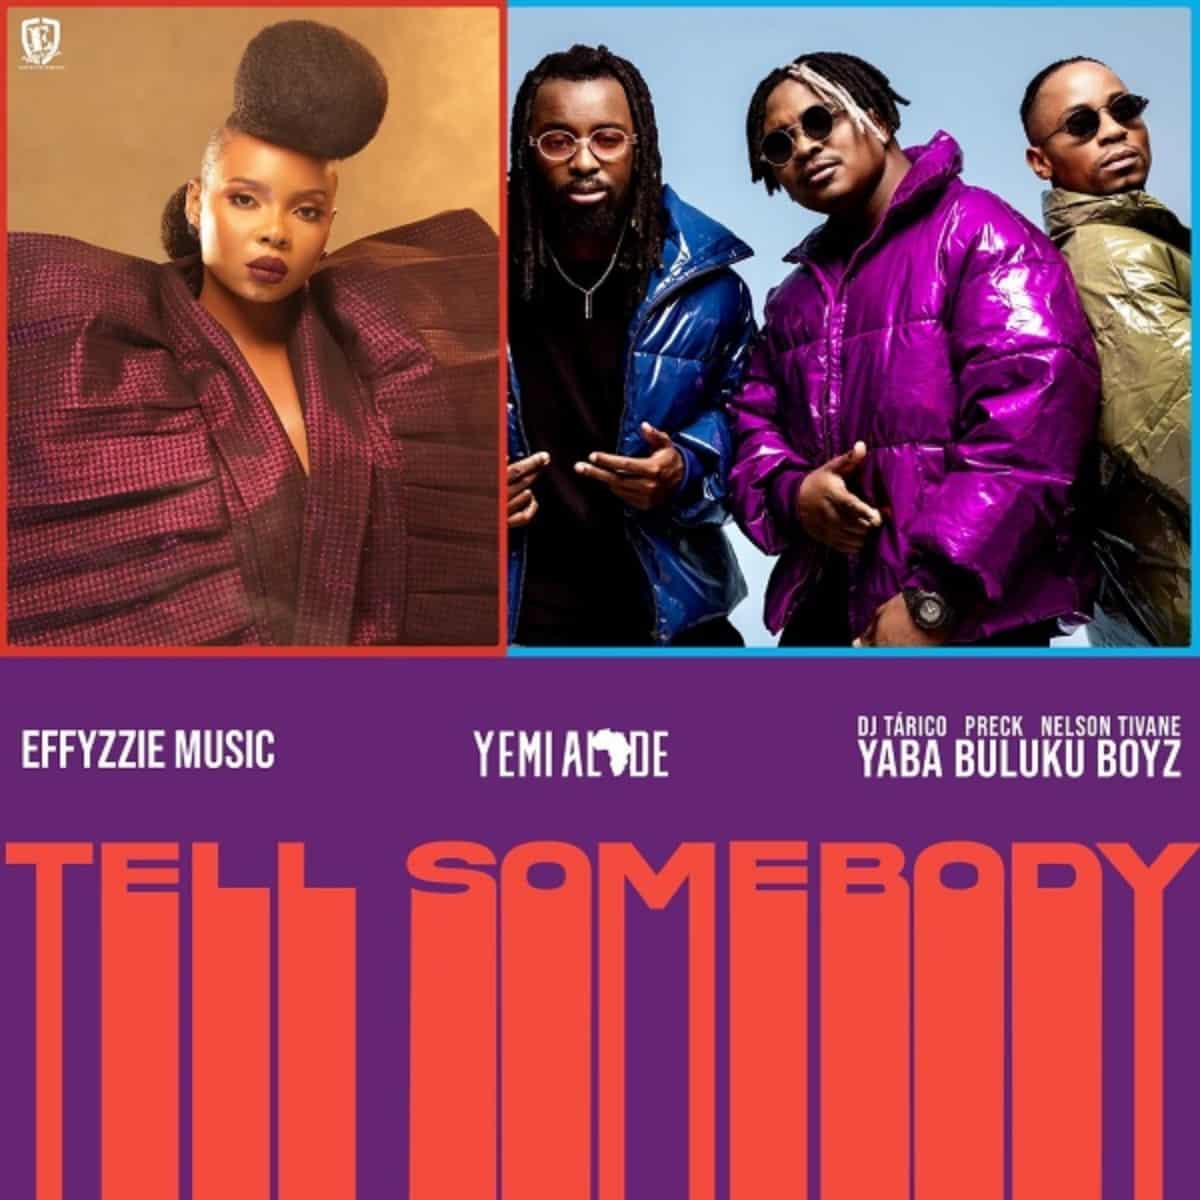 DOWNLOAD: Yemi Alade Feat. Yaba Buluku Boyz – “Tell Somebody” Mp3